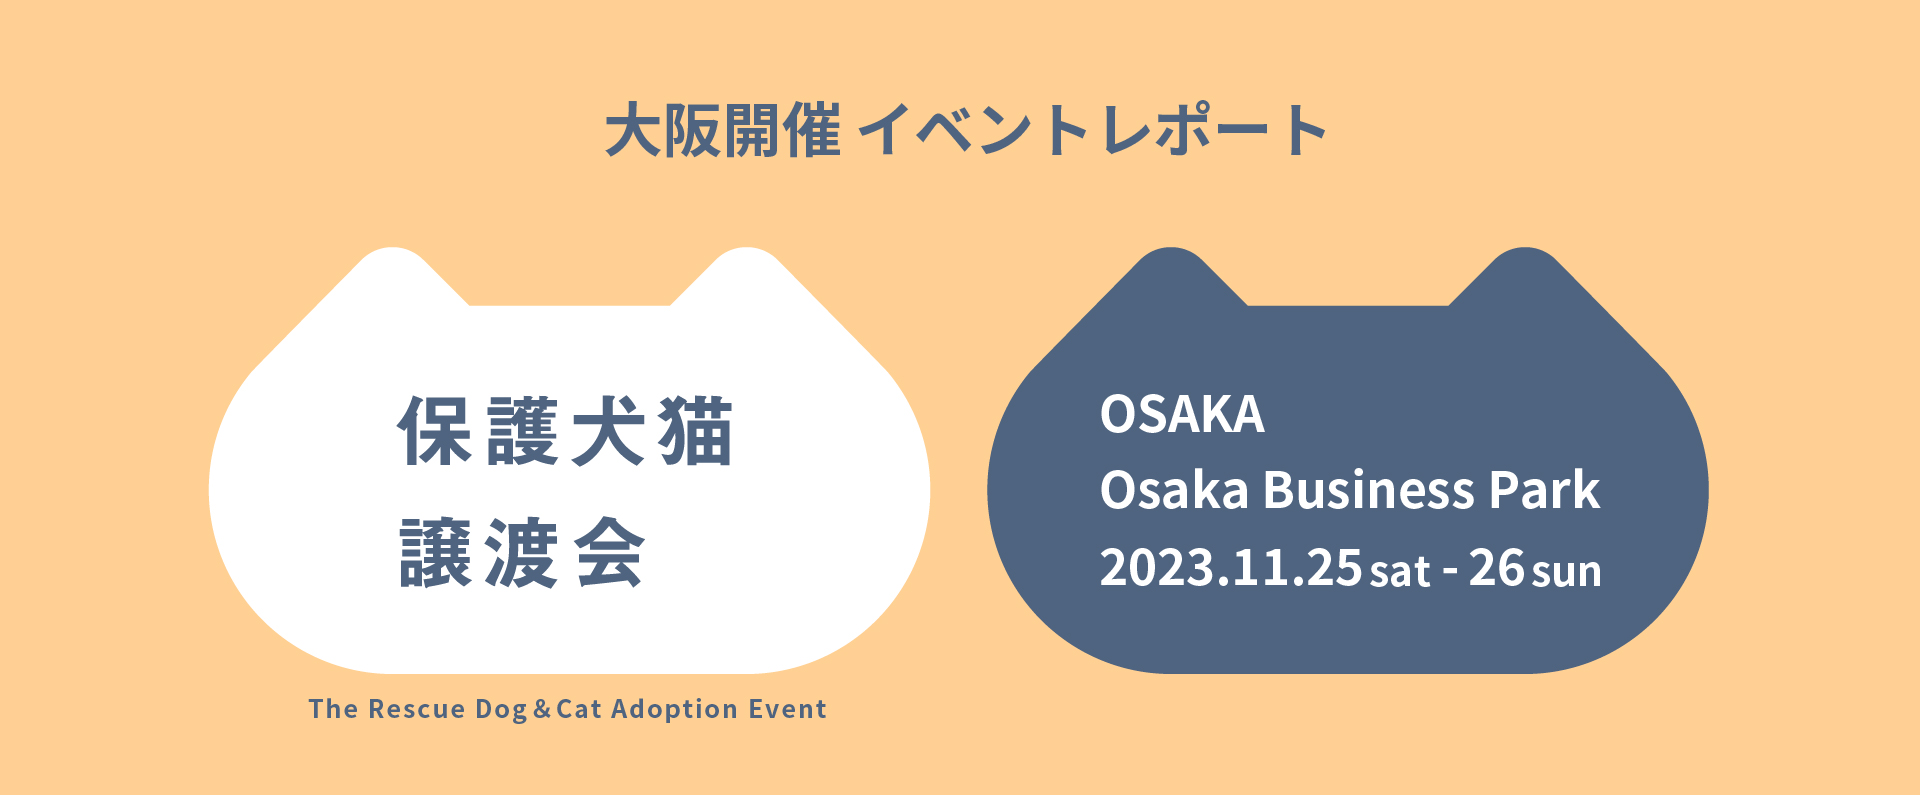 パナソニック保護犬猫譲渡会 大阪開催のイベントレポートにリンクします